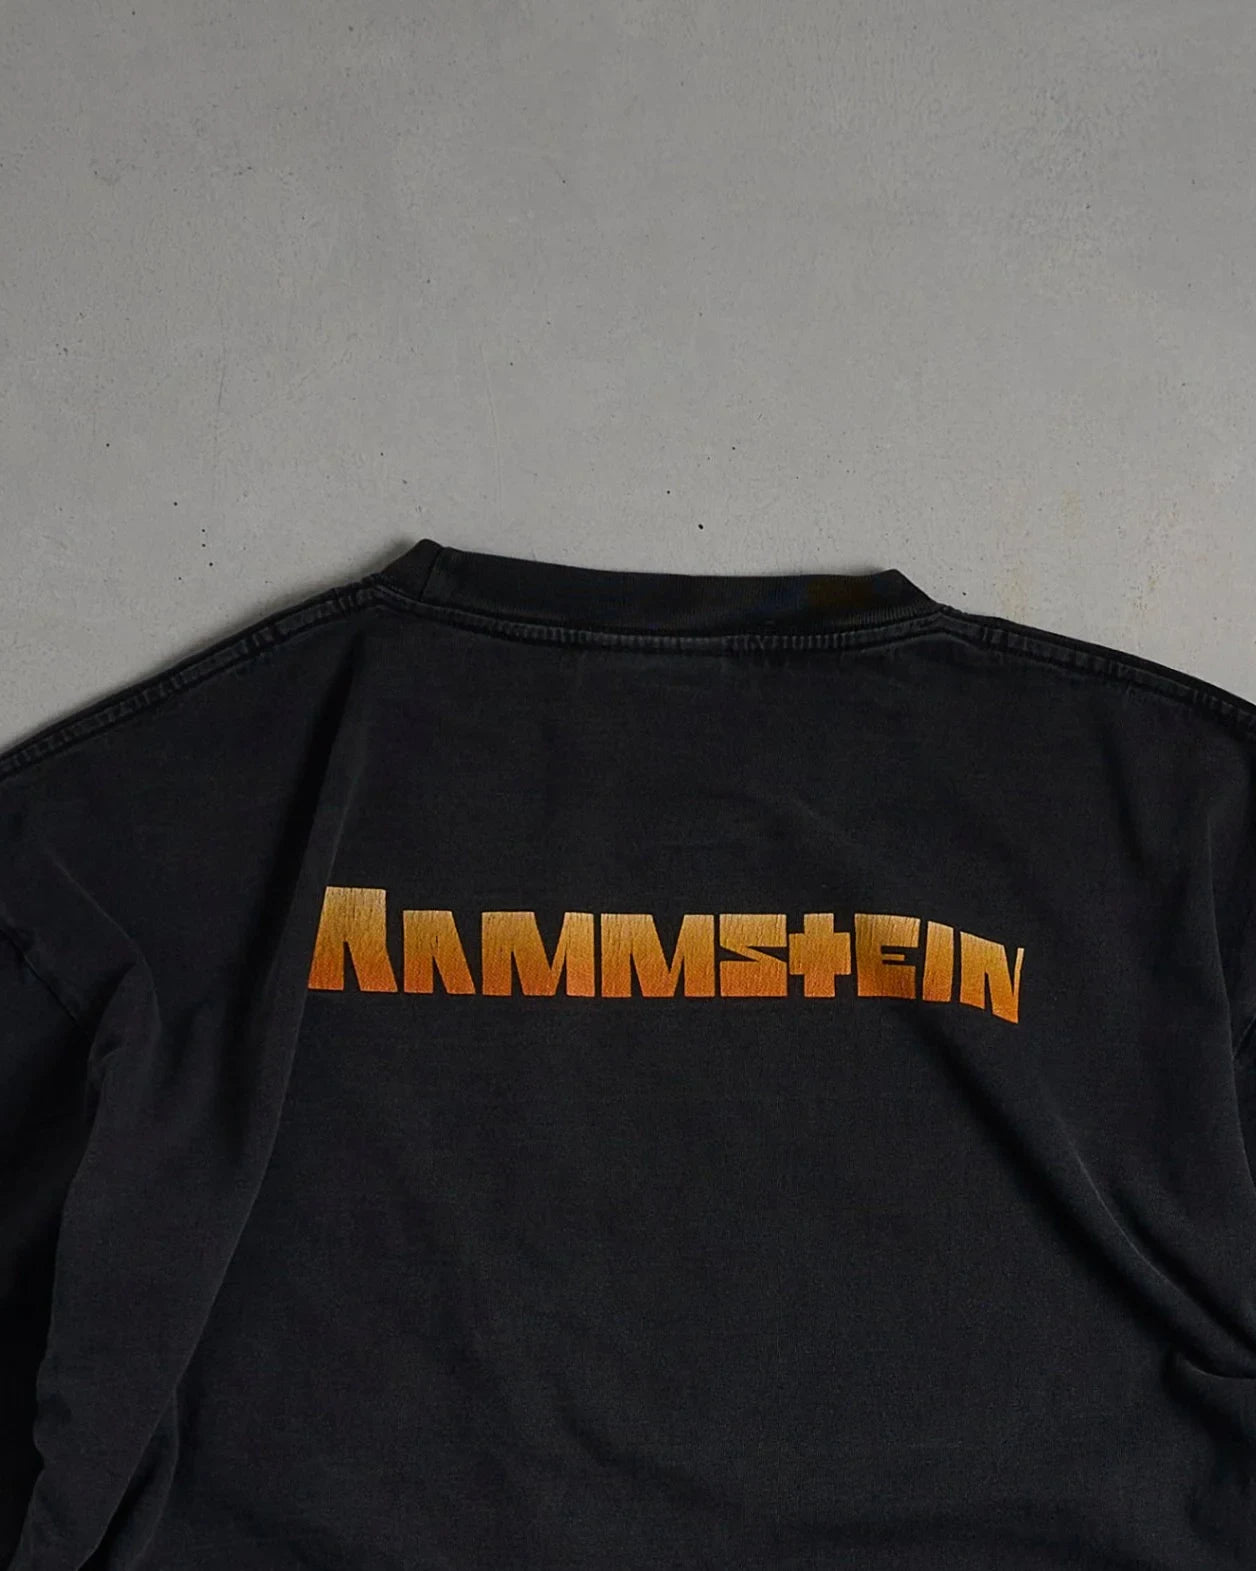 Vintage Rammstein T-Shirt Top